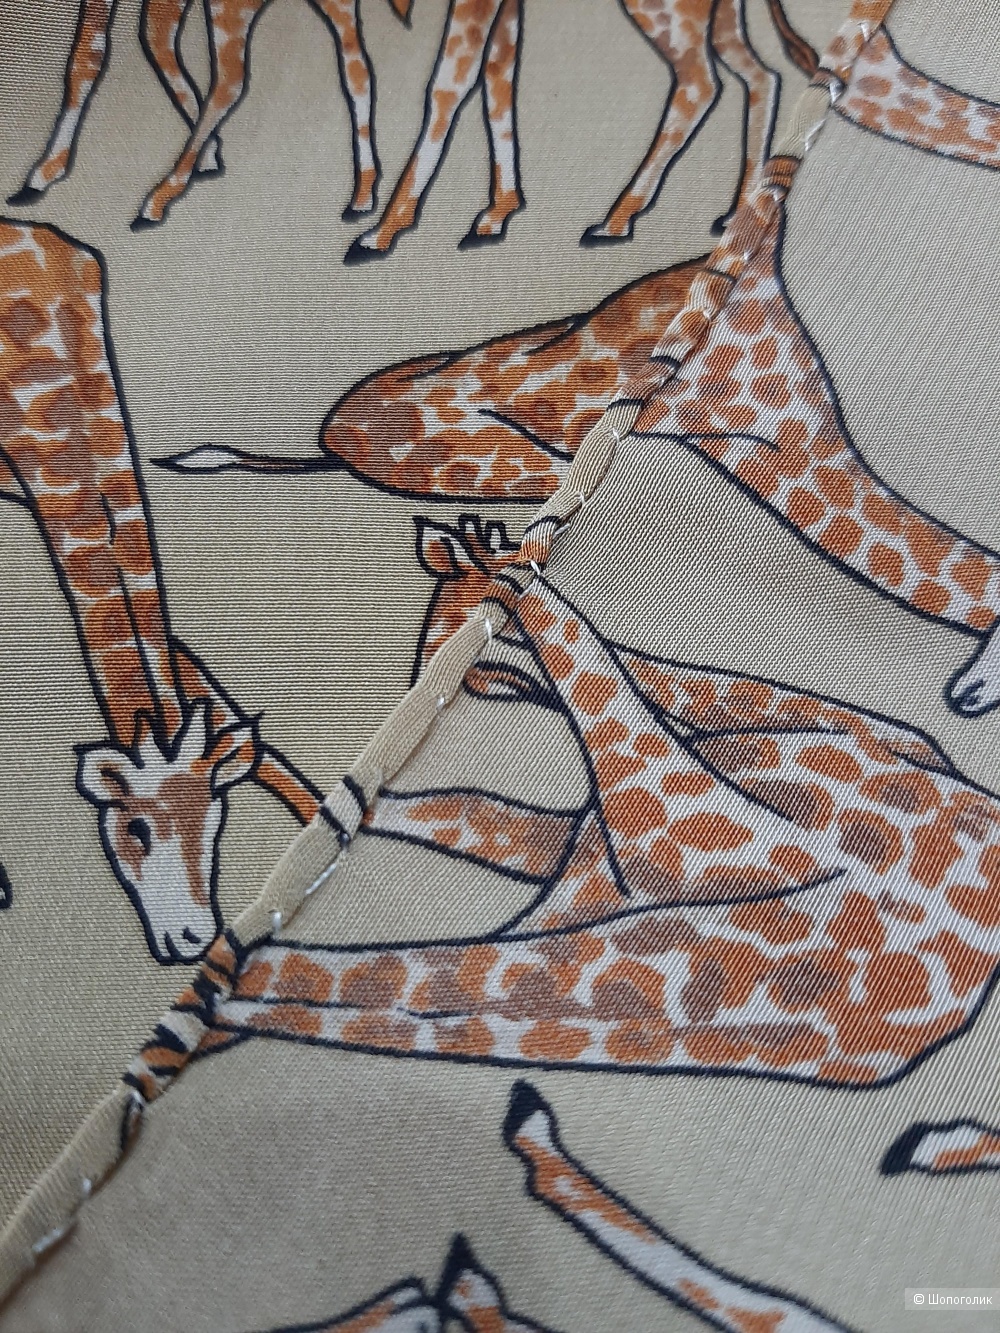 Каре (платок-каре от франц. Carre — квадрат) " Жирафики" 94*100см . Сафари стиль.